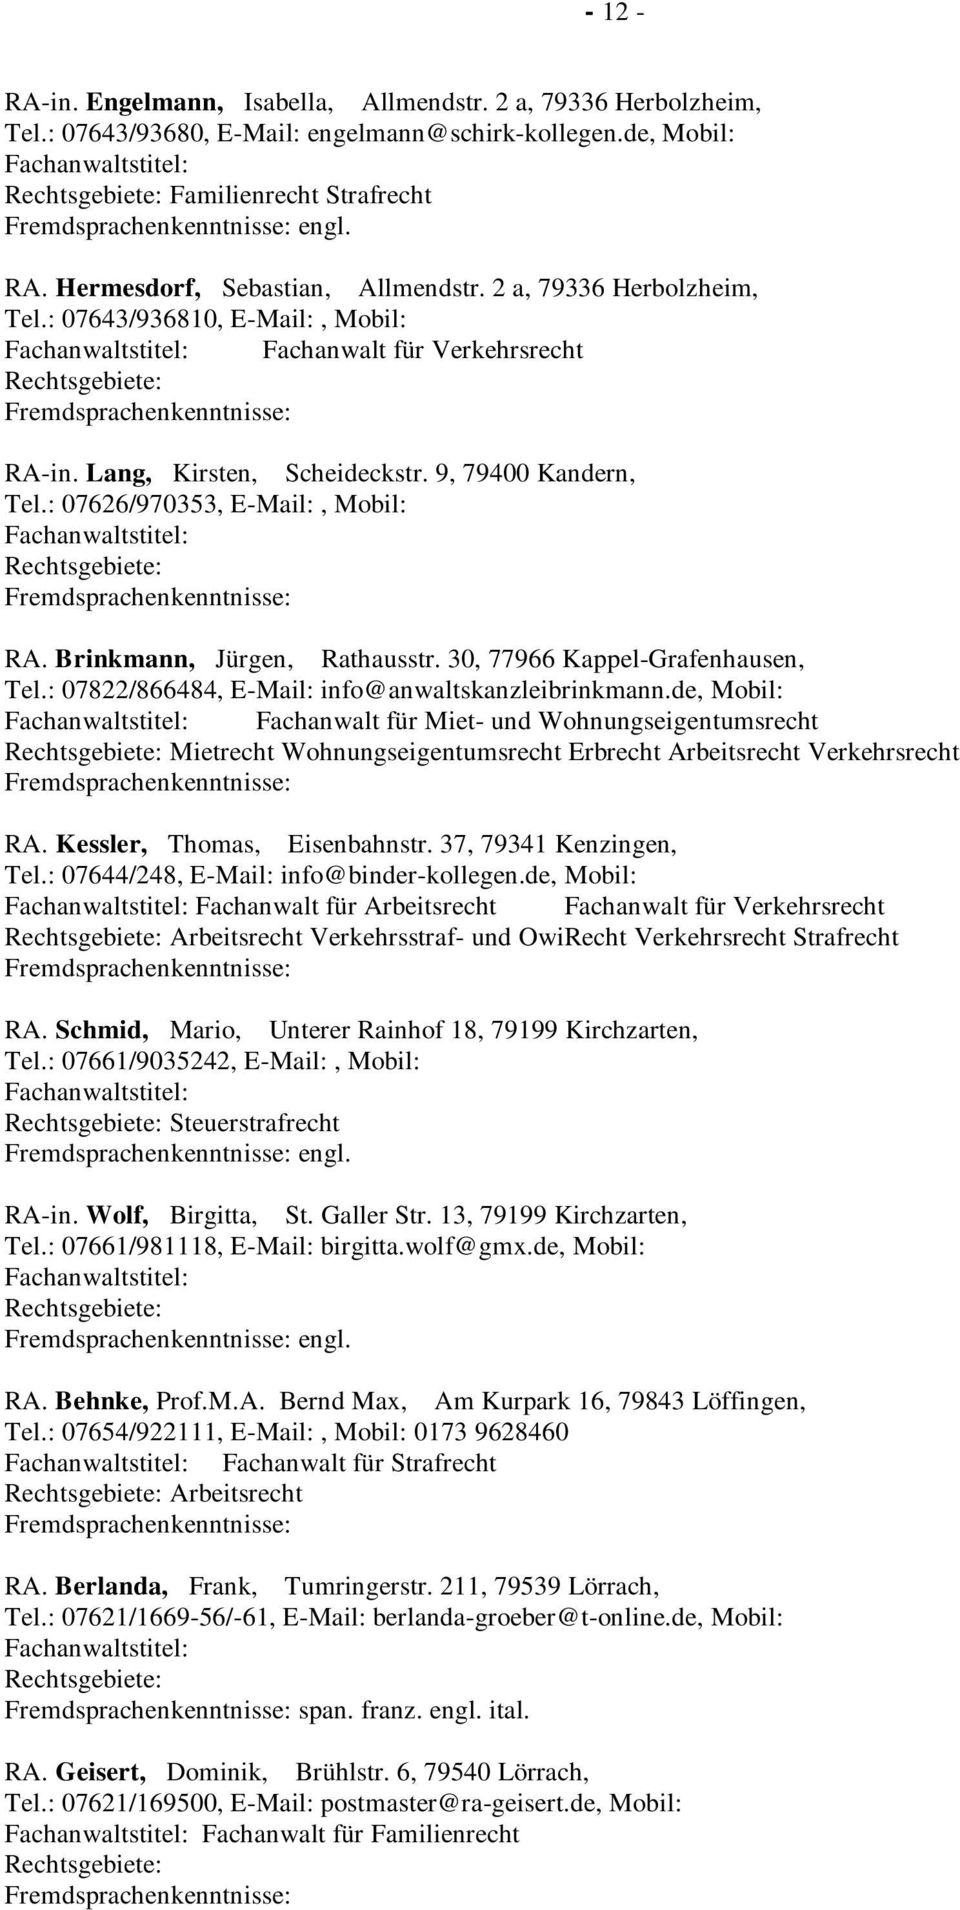 Brinkmann, Jürgen, Rathausstr. 30, 77966 Kappel-Grafenhausen, Tel.: 07822/866484, E-Mail: info@anwaltskanzleibrinkmann.